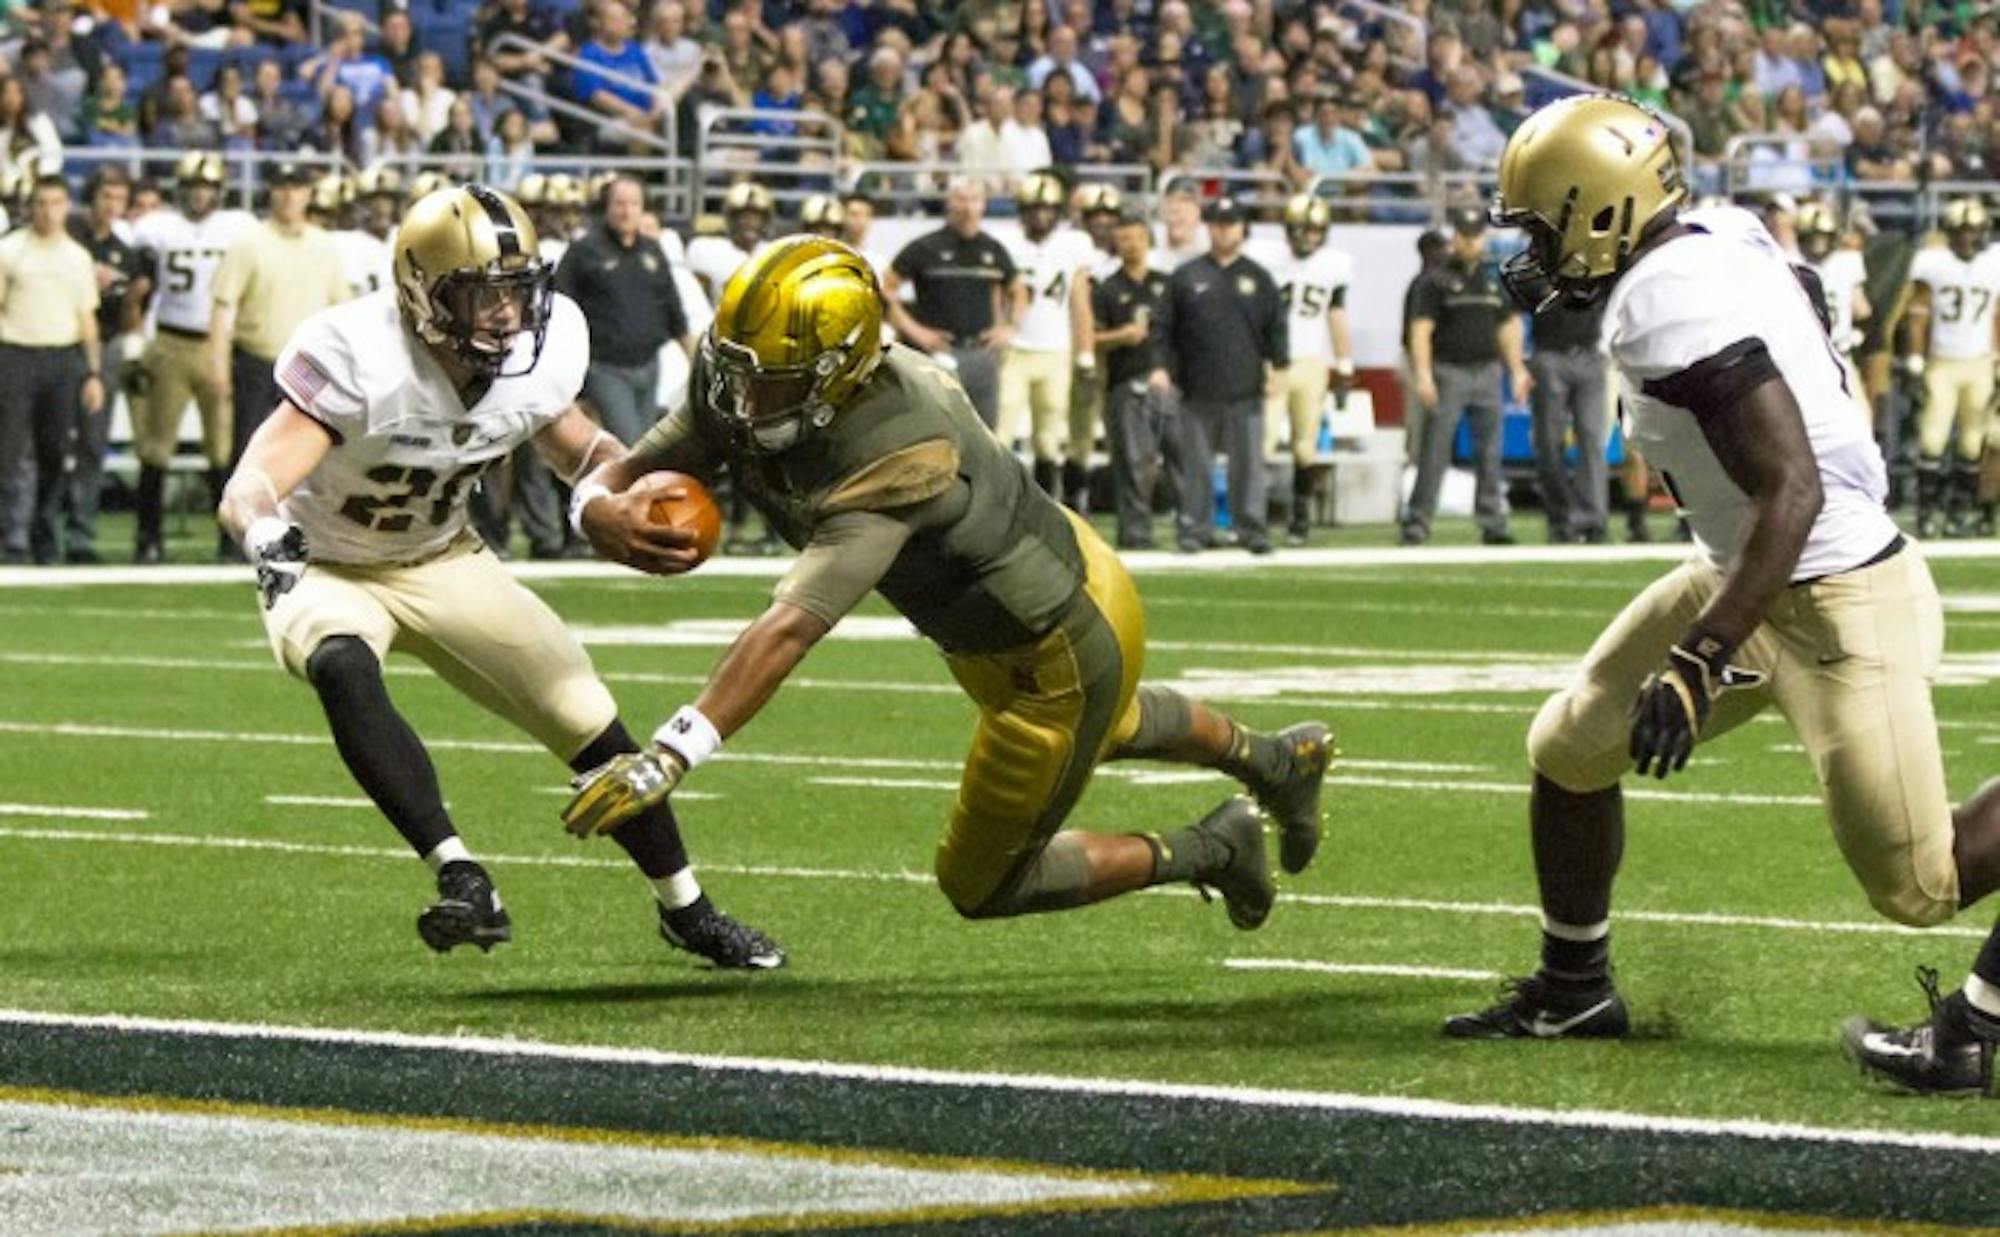 Irish junior quarterback DeShone Kizer dives into the end zone during Notre Dame's 44-6 win in San Antonio on Saturday.